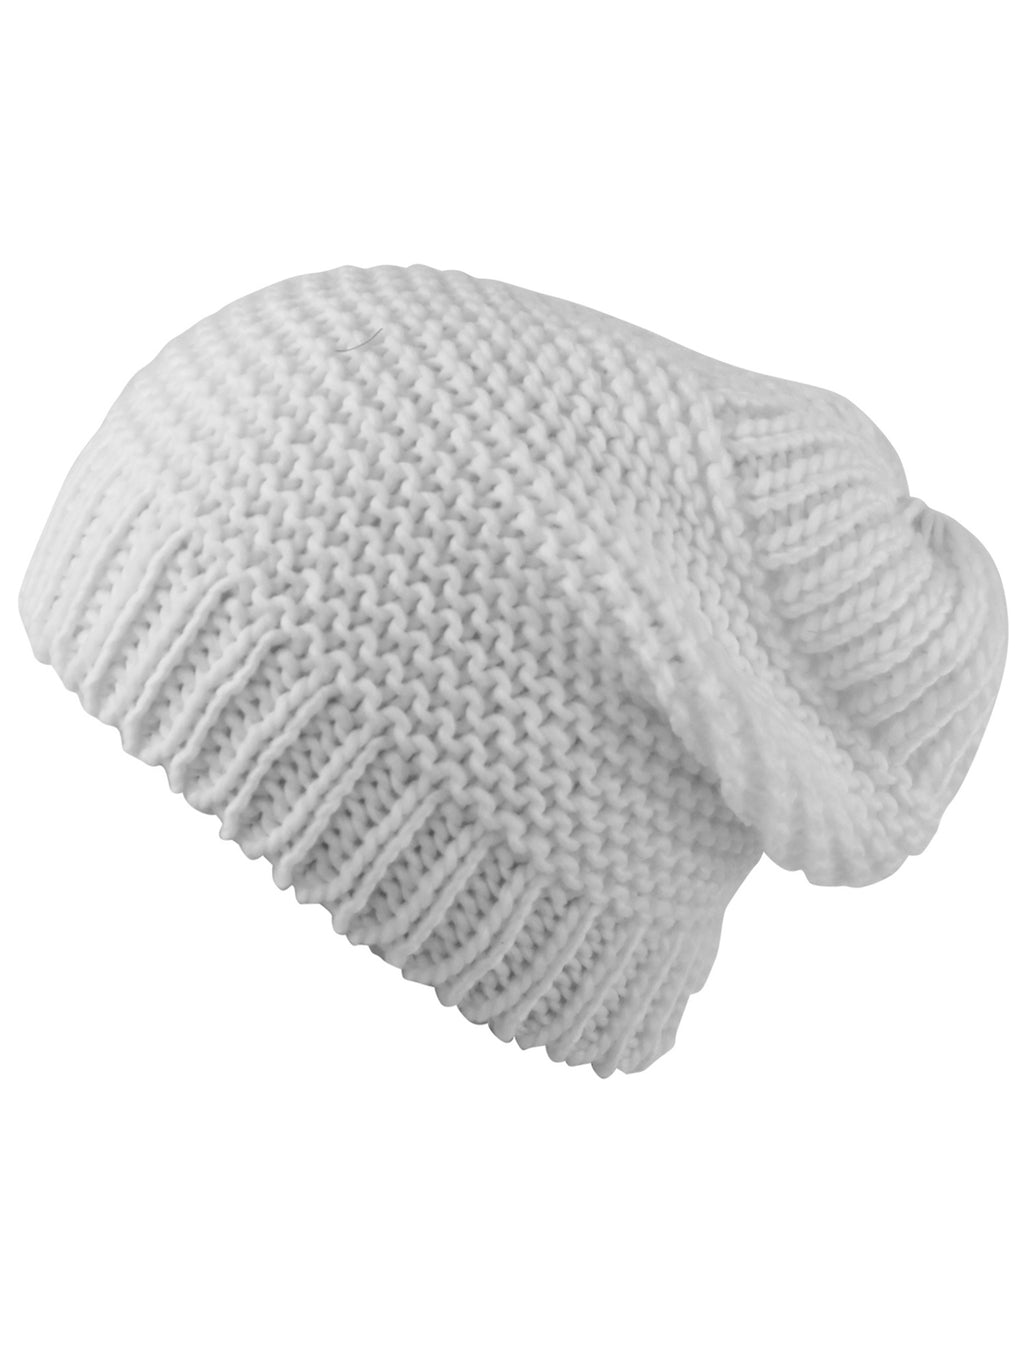 Ivory Knit Ponytail Beanie Hat